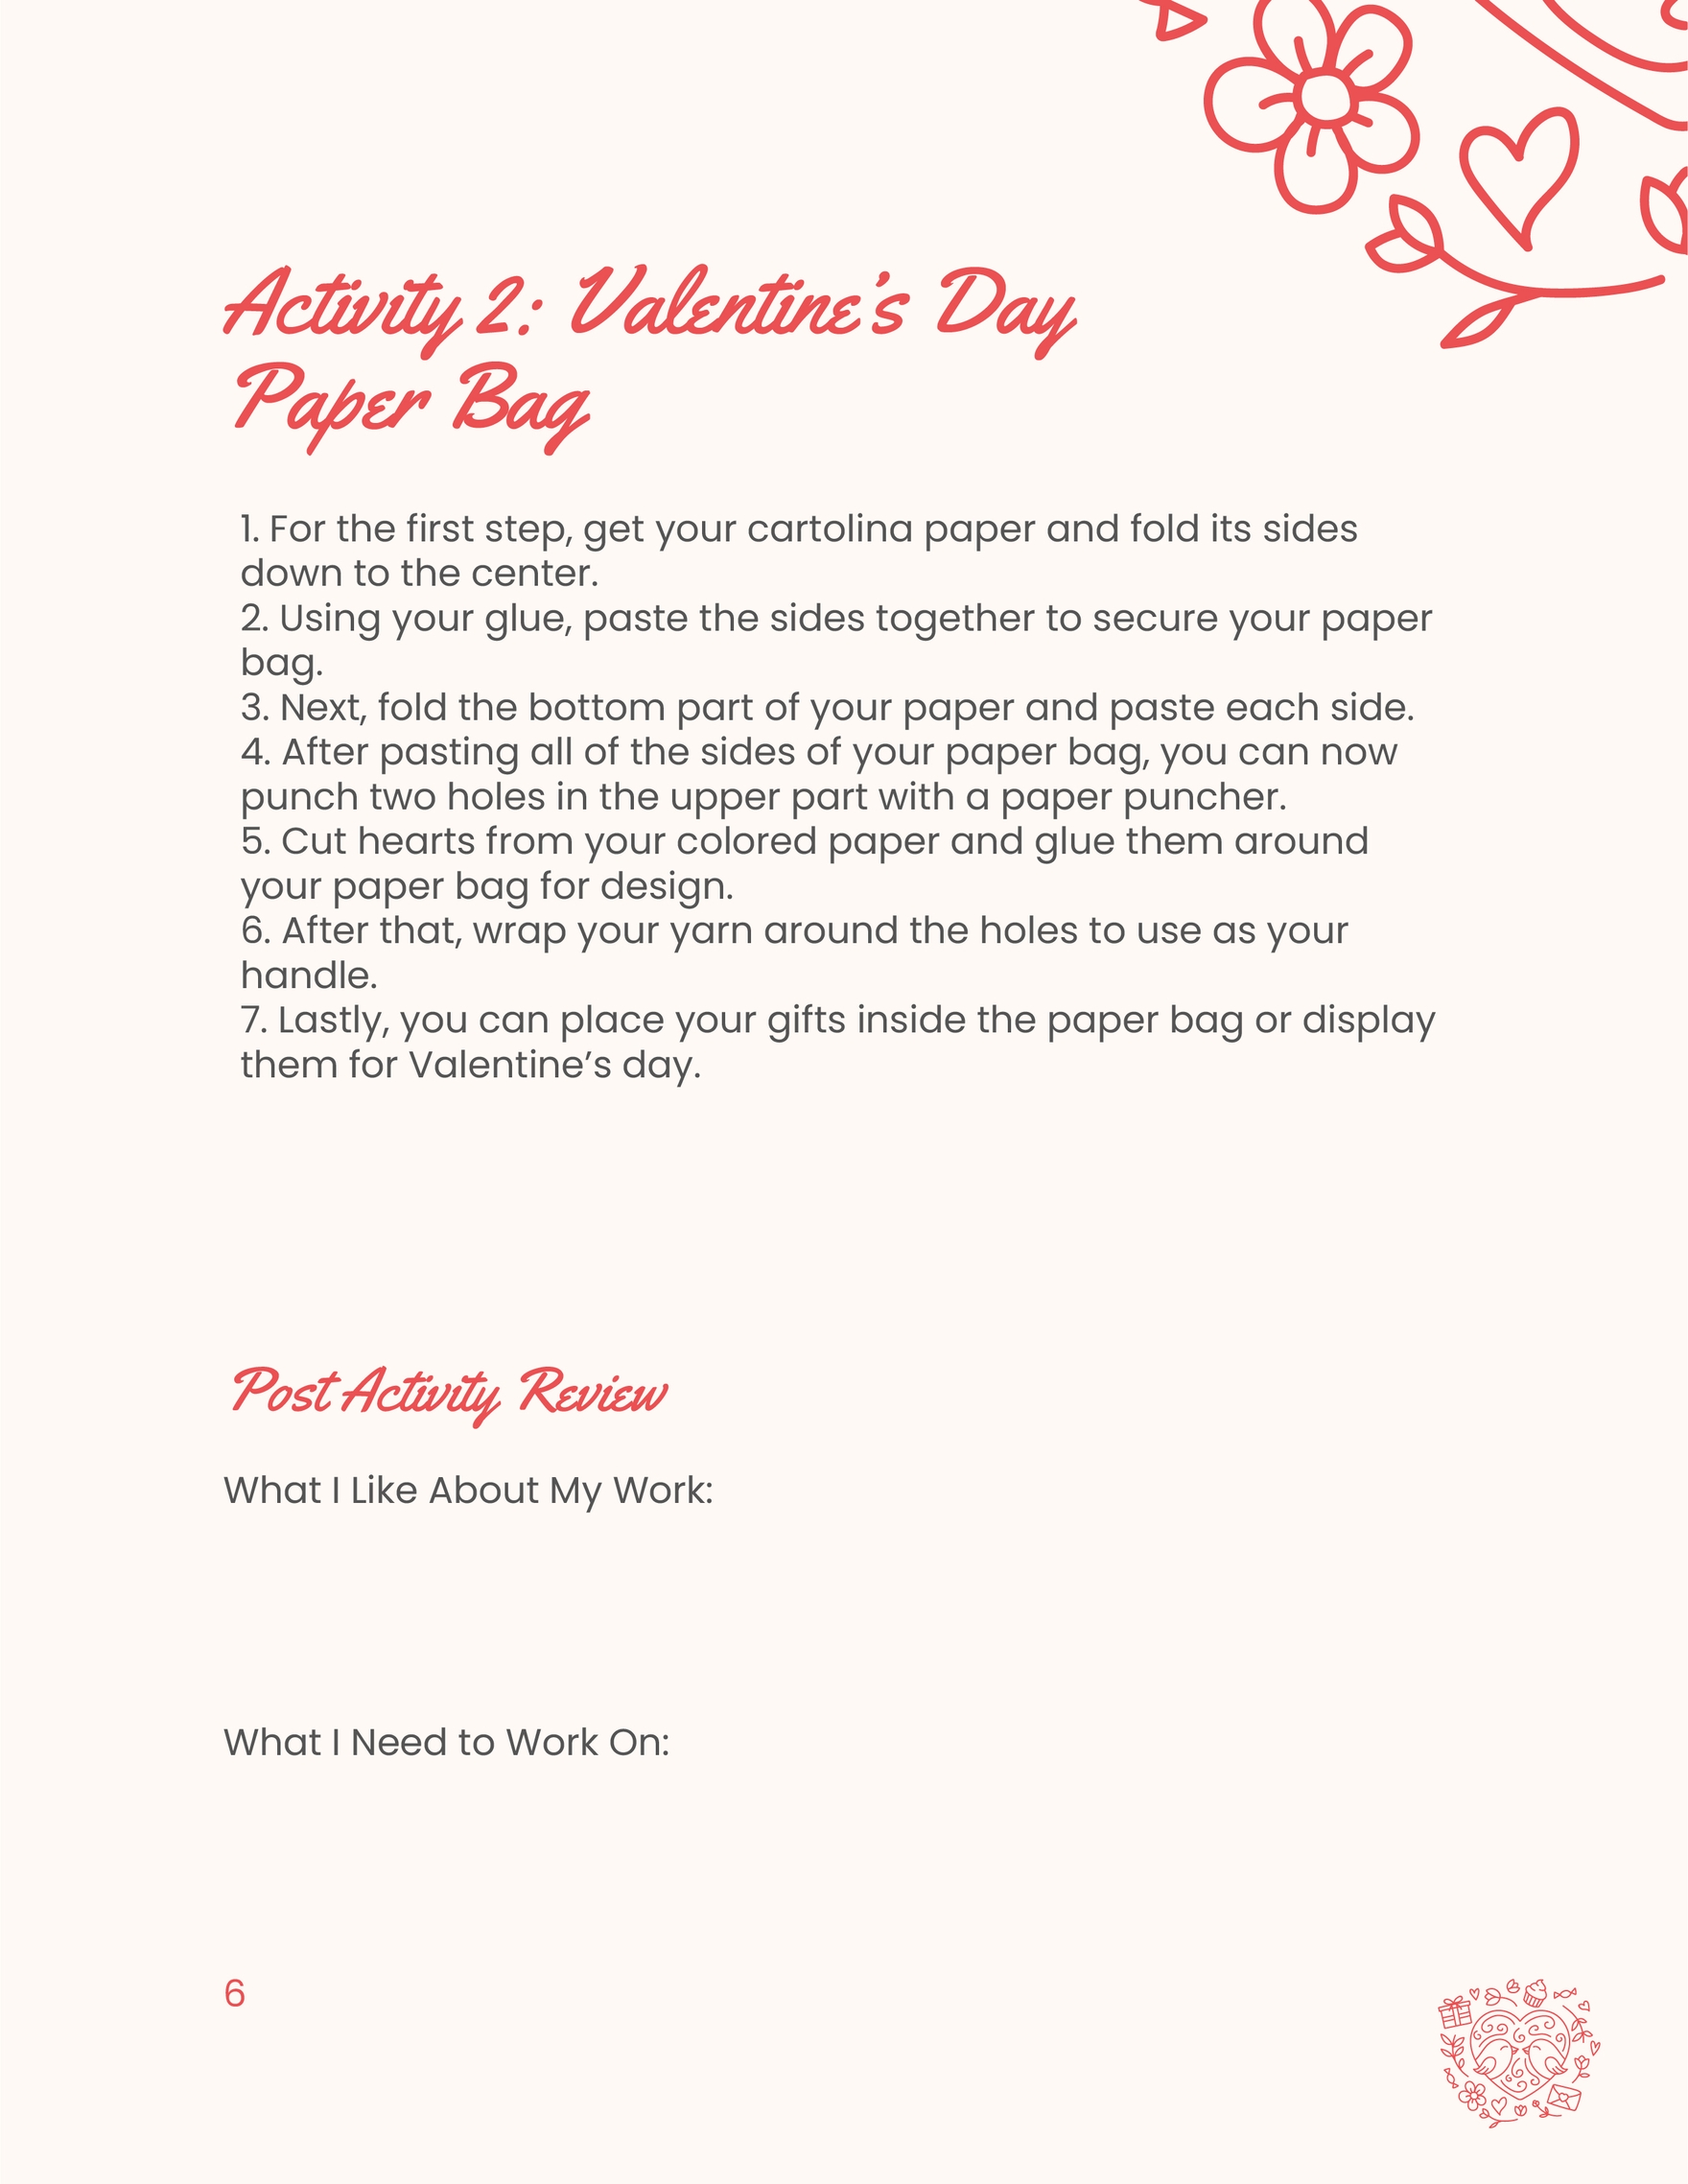 Valentine's Day Activity Workbook Template